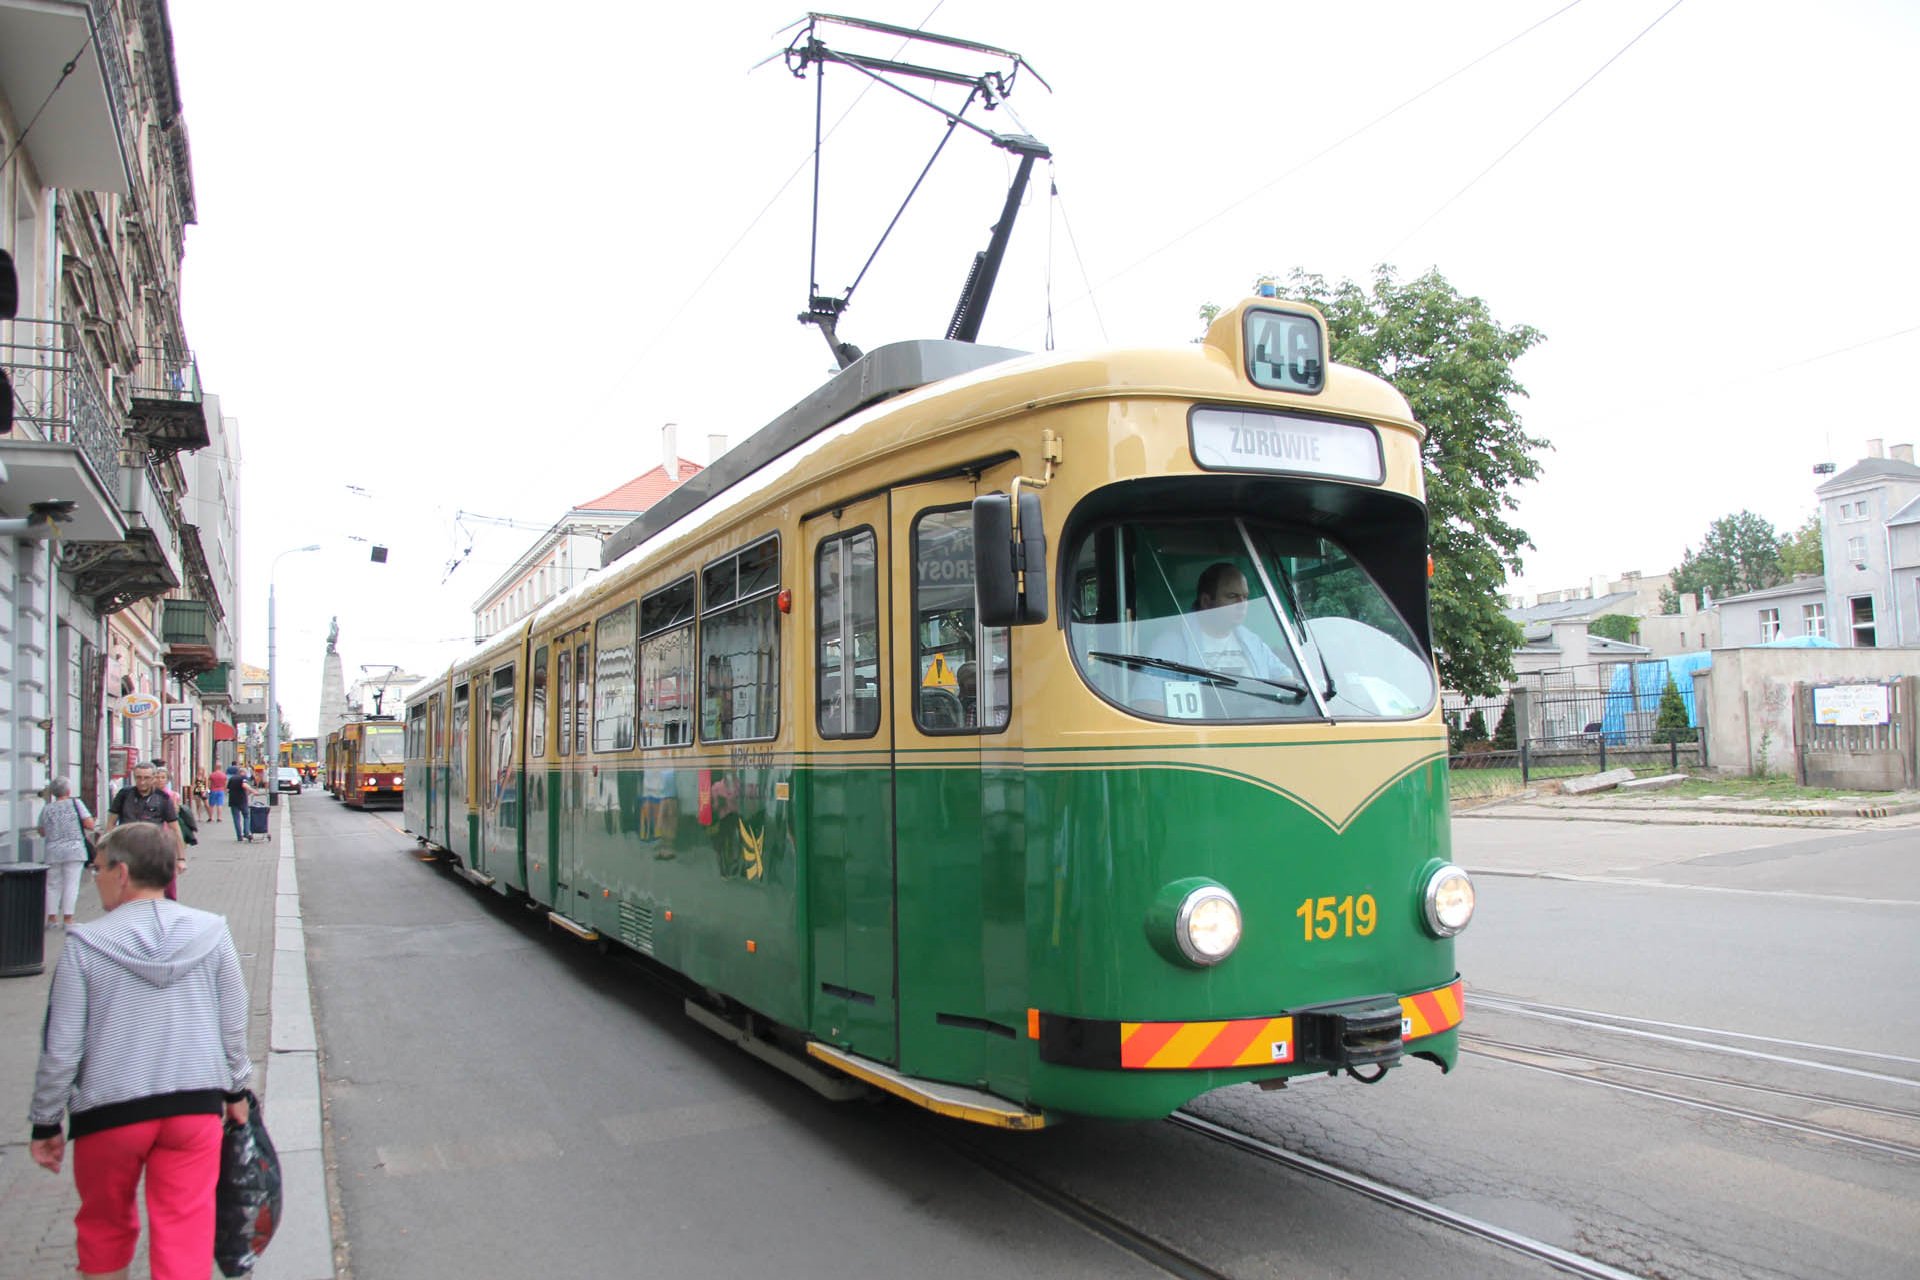 GT8NF ex Helsinki ex Mannheim 1519 Vier dieser Garnituren machten auf der Reise zwischen dem Rhein-Neckar-Gebiet und Polen einen 6-jährigen Abstecher nach Helsinki. Four trams ran for six years in Helsinki.